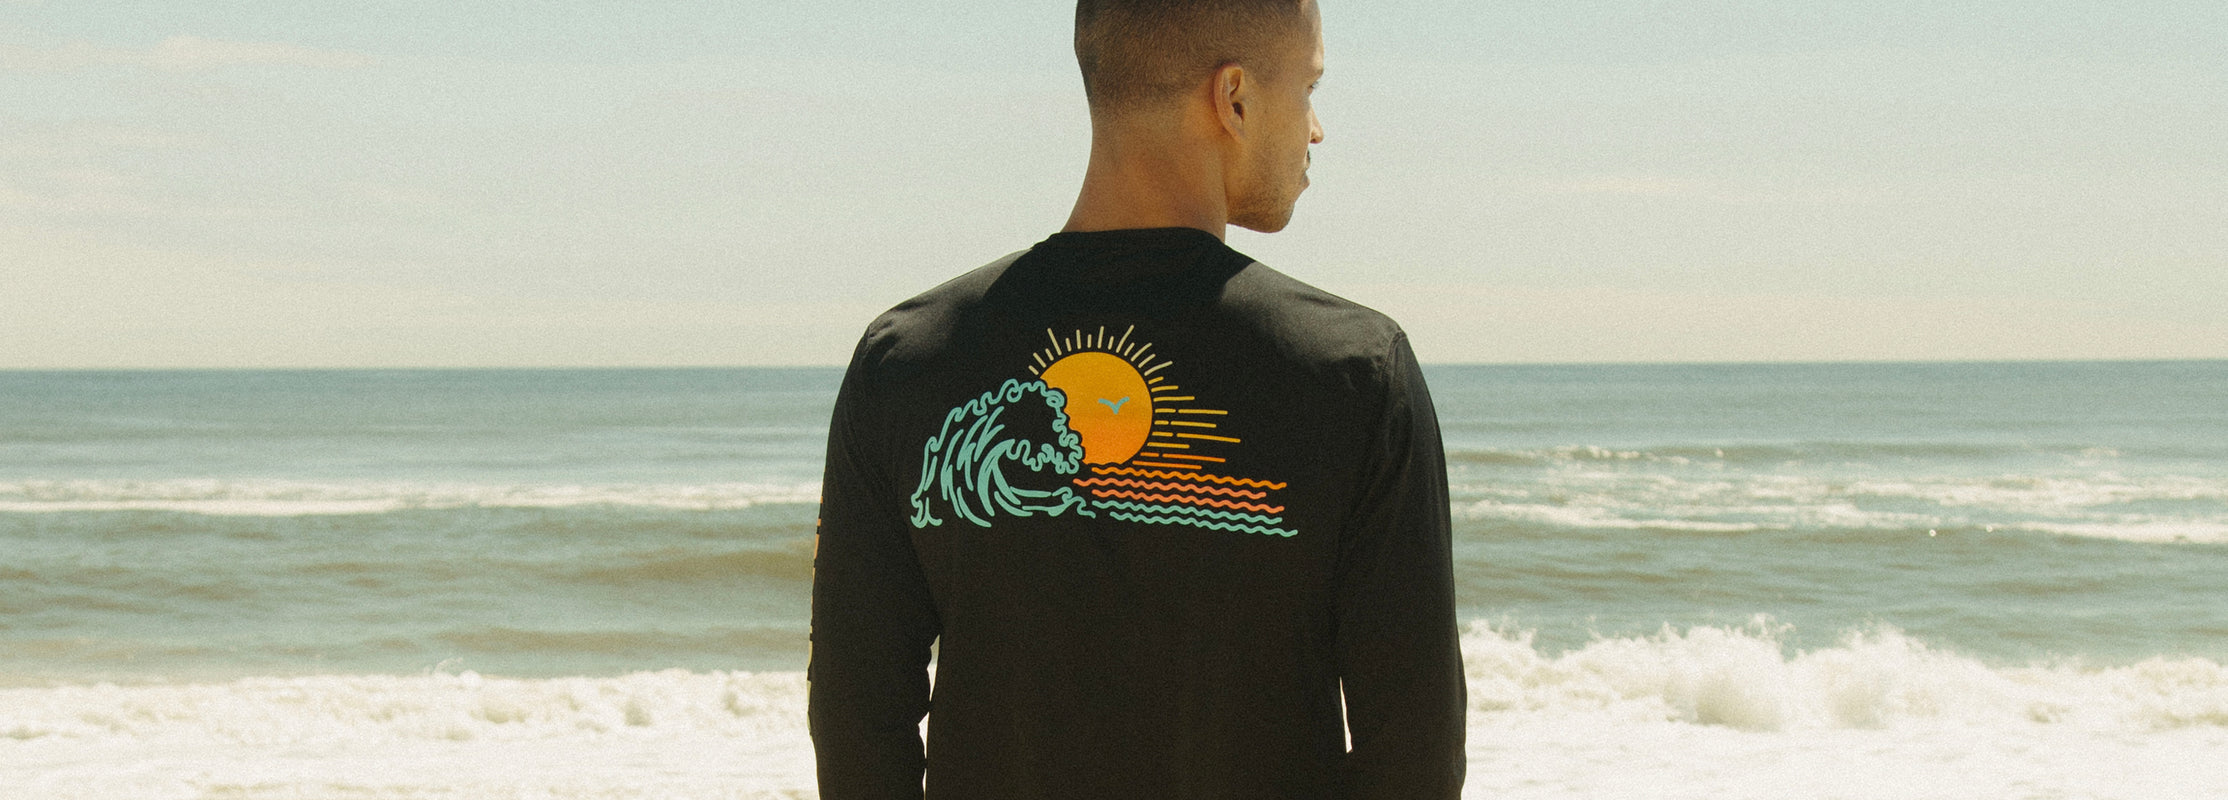 Surfside Supply Co. | Shop Beachwear & Resort Wear for Men & Women